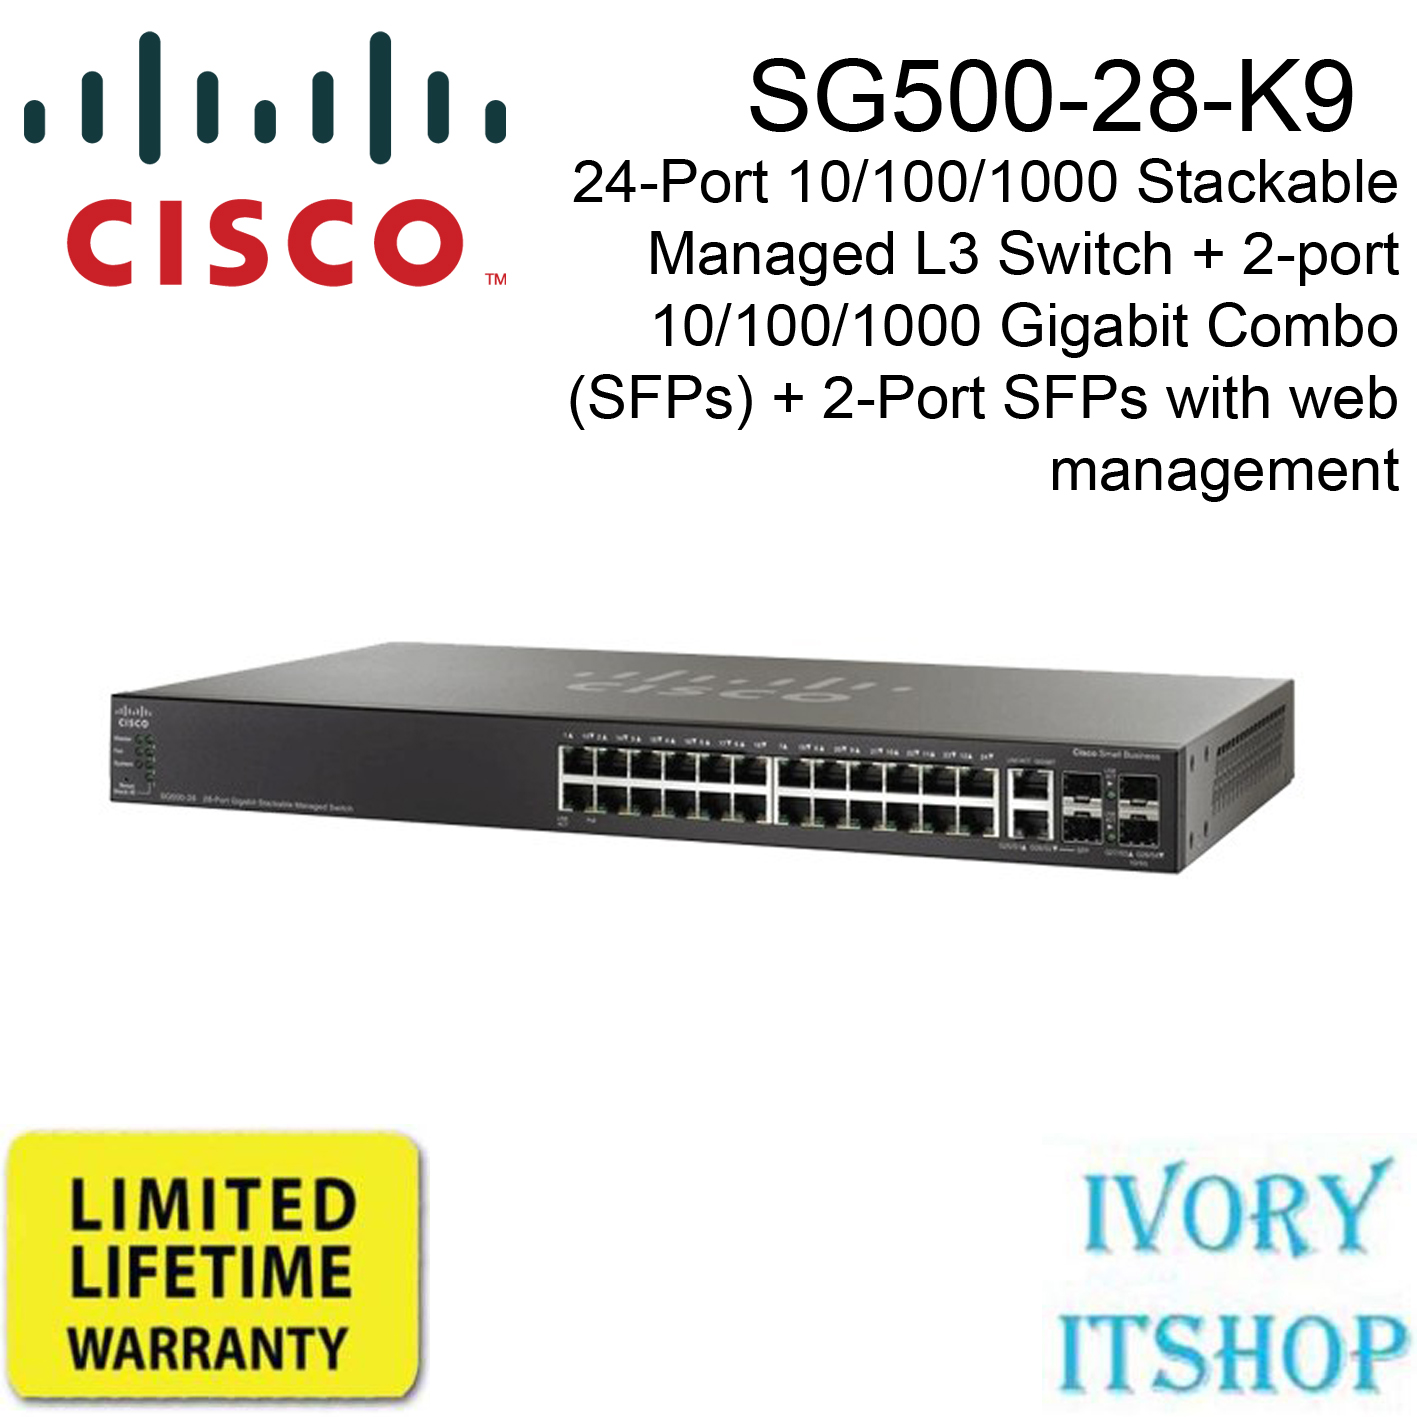 Cisco SG500-28 24 Port Gigabit Stackable Managed L3 Switch + 2-port Gigabit Combo (SFPs) + 2-Port SFPs With web management, Rack mountable